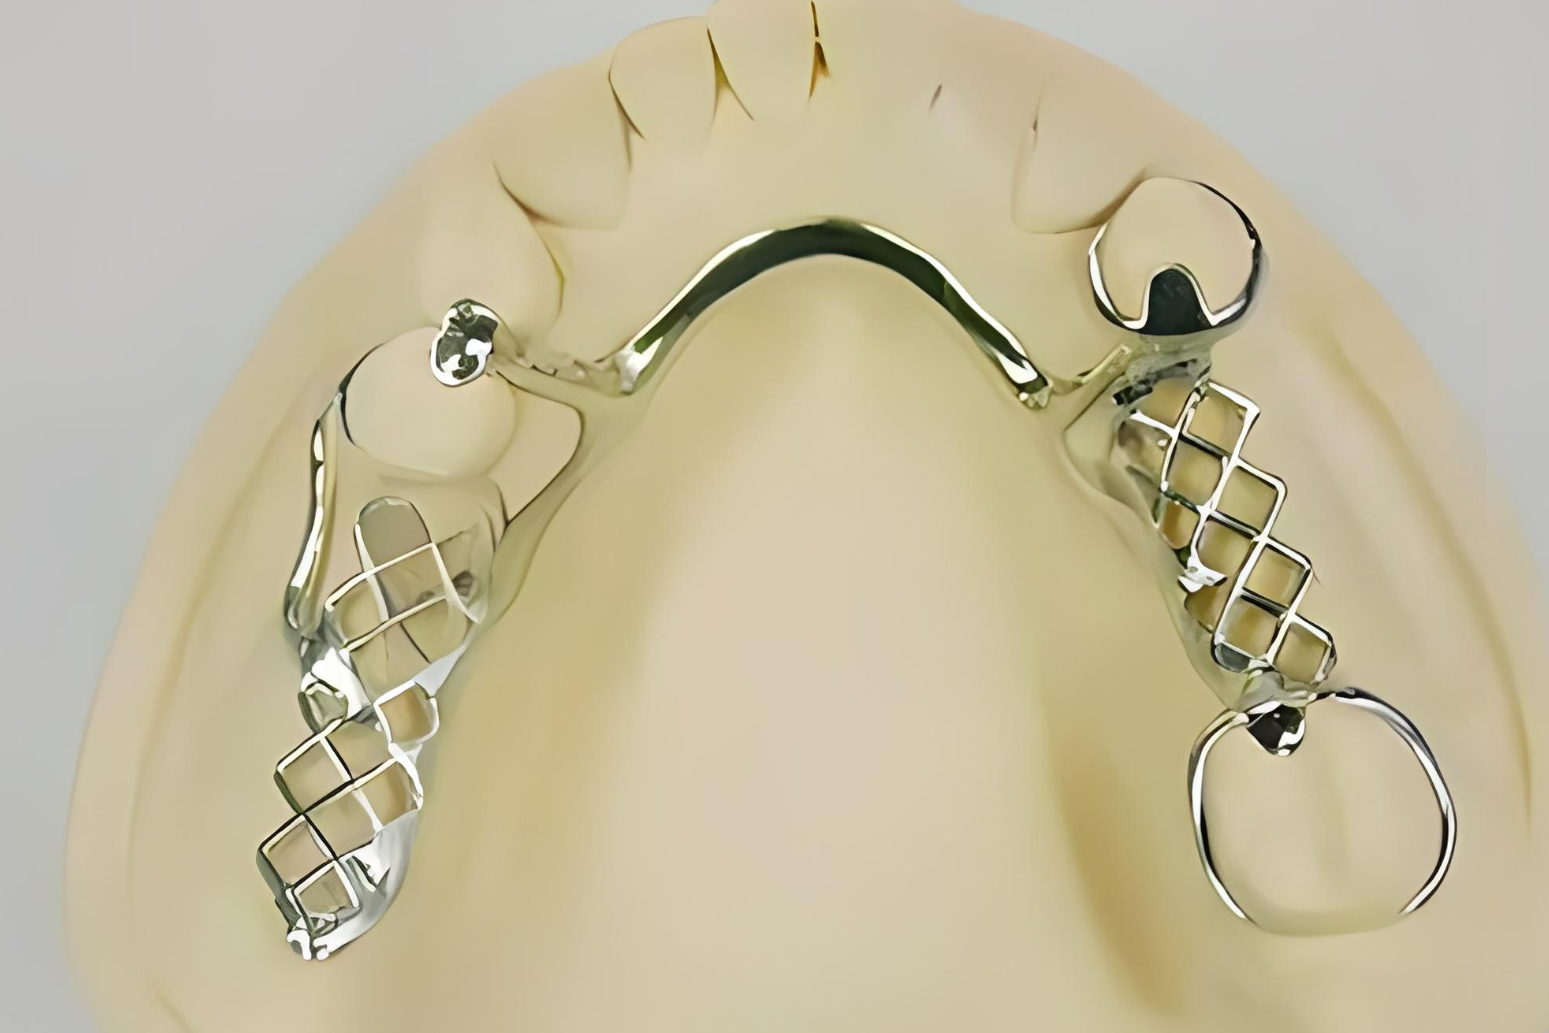 钛合金支架活动义齿